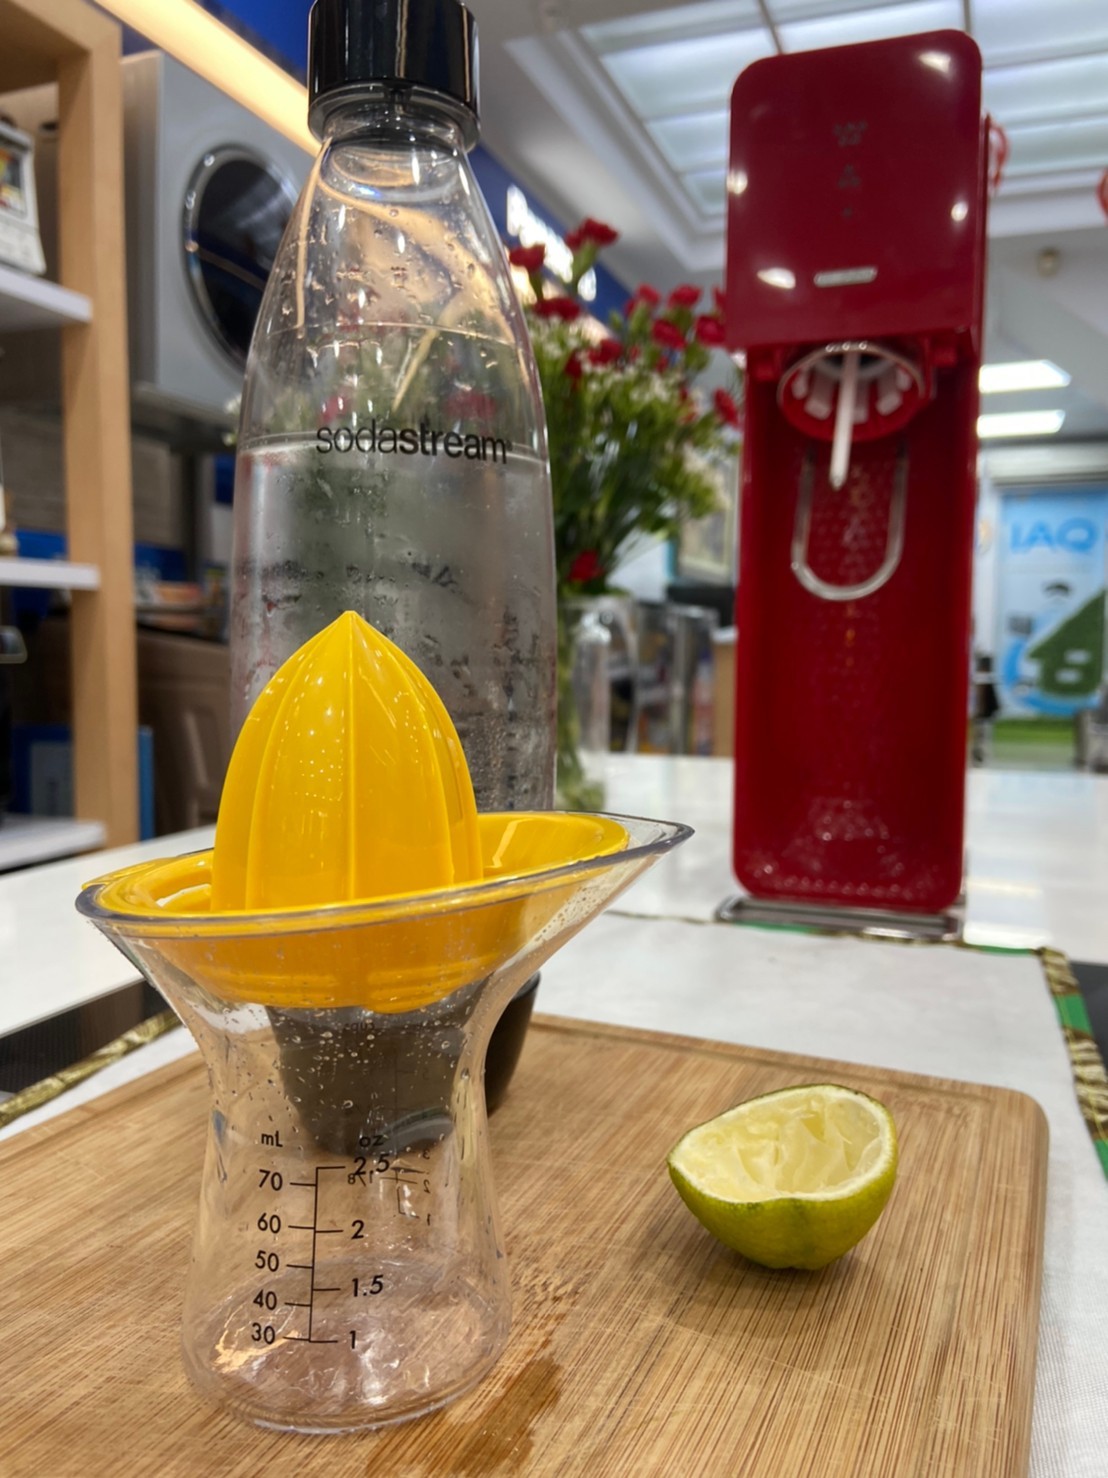 【美國OXO】檸檬榨汁器 適用各種柑橘檸檬類水果 輕鬆榨汁